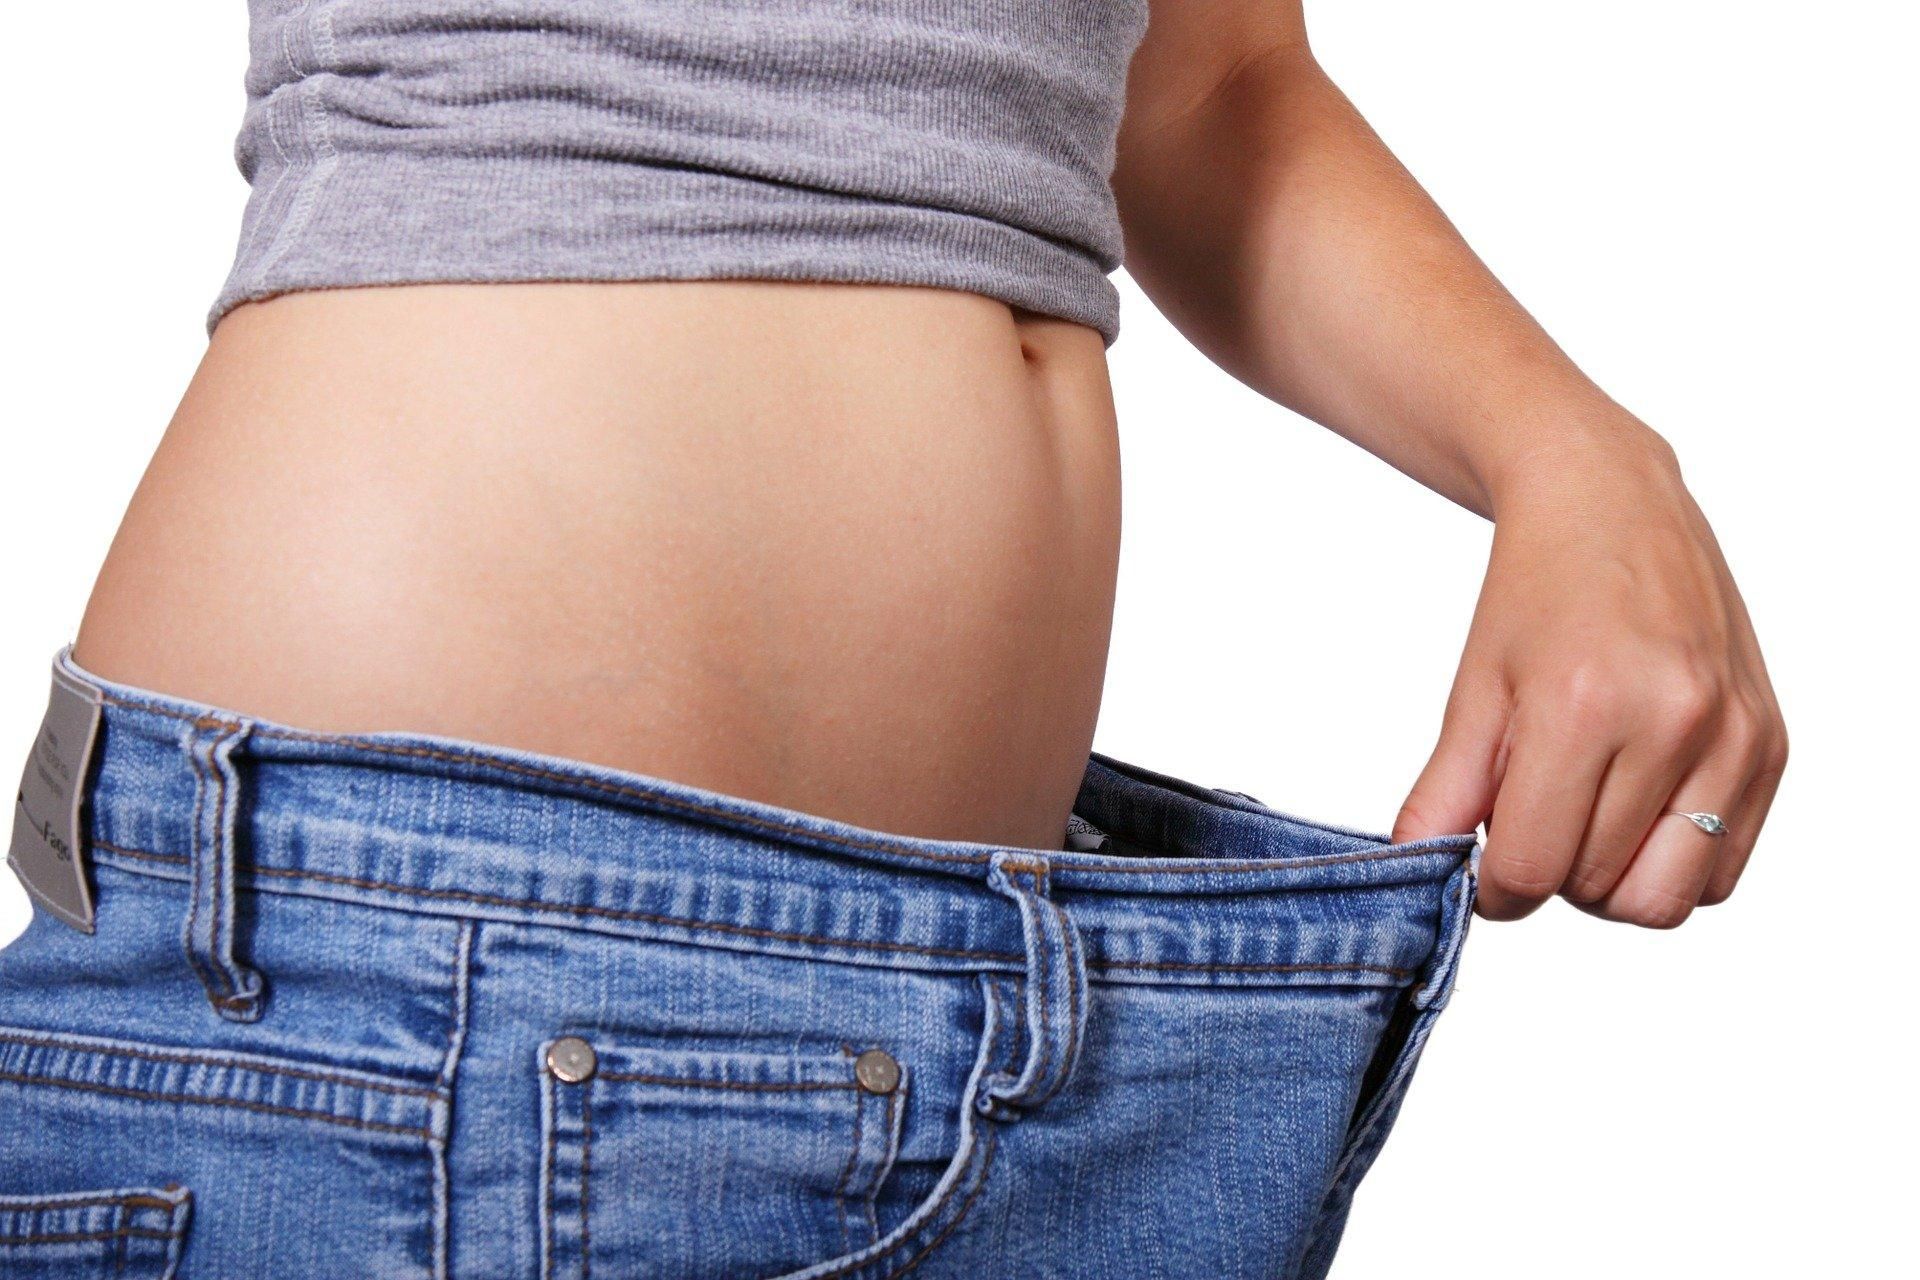 Вес остановился на месте: что делать и как похудеть - советы профи